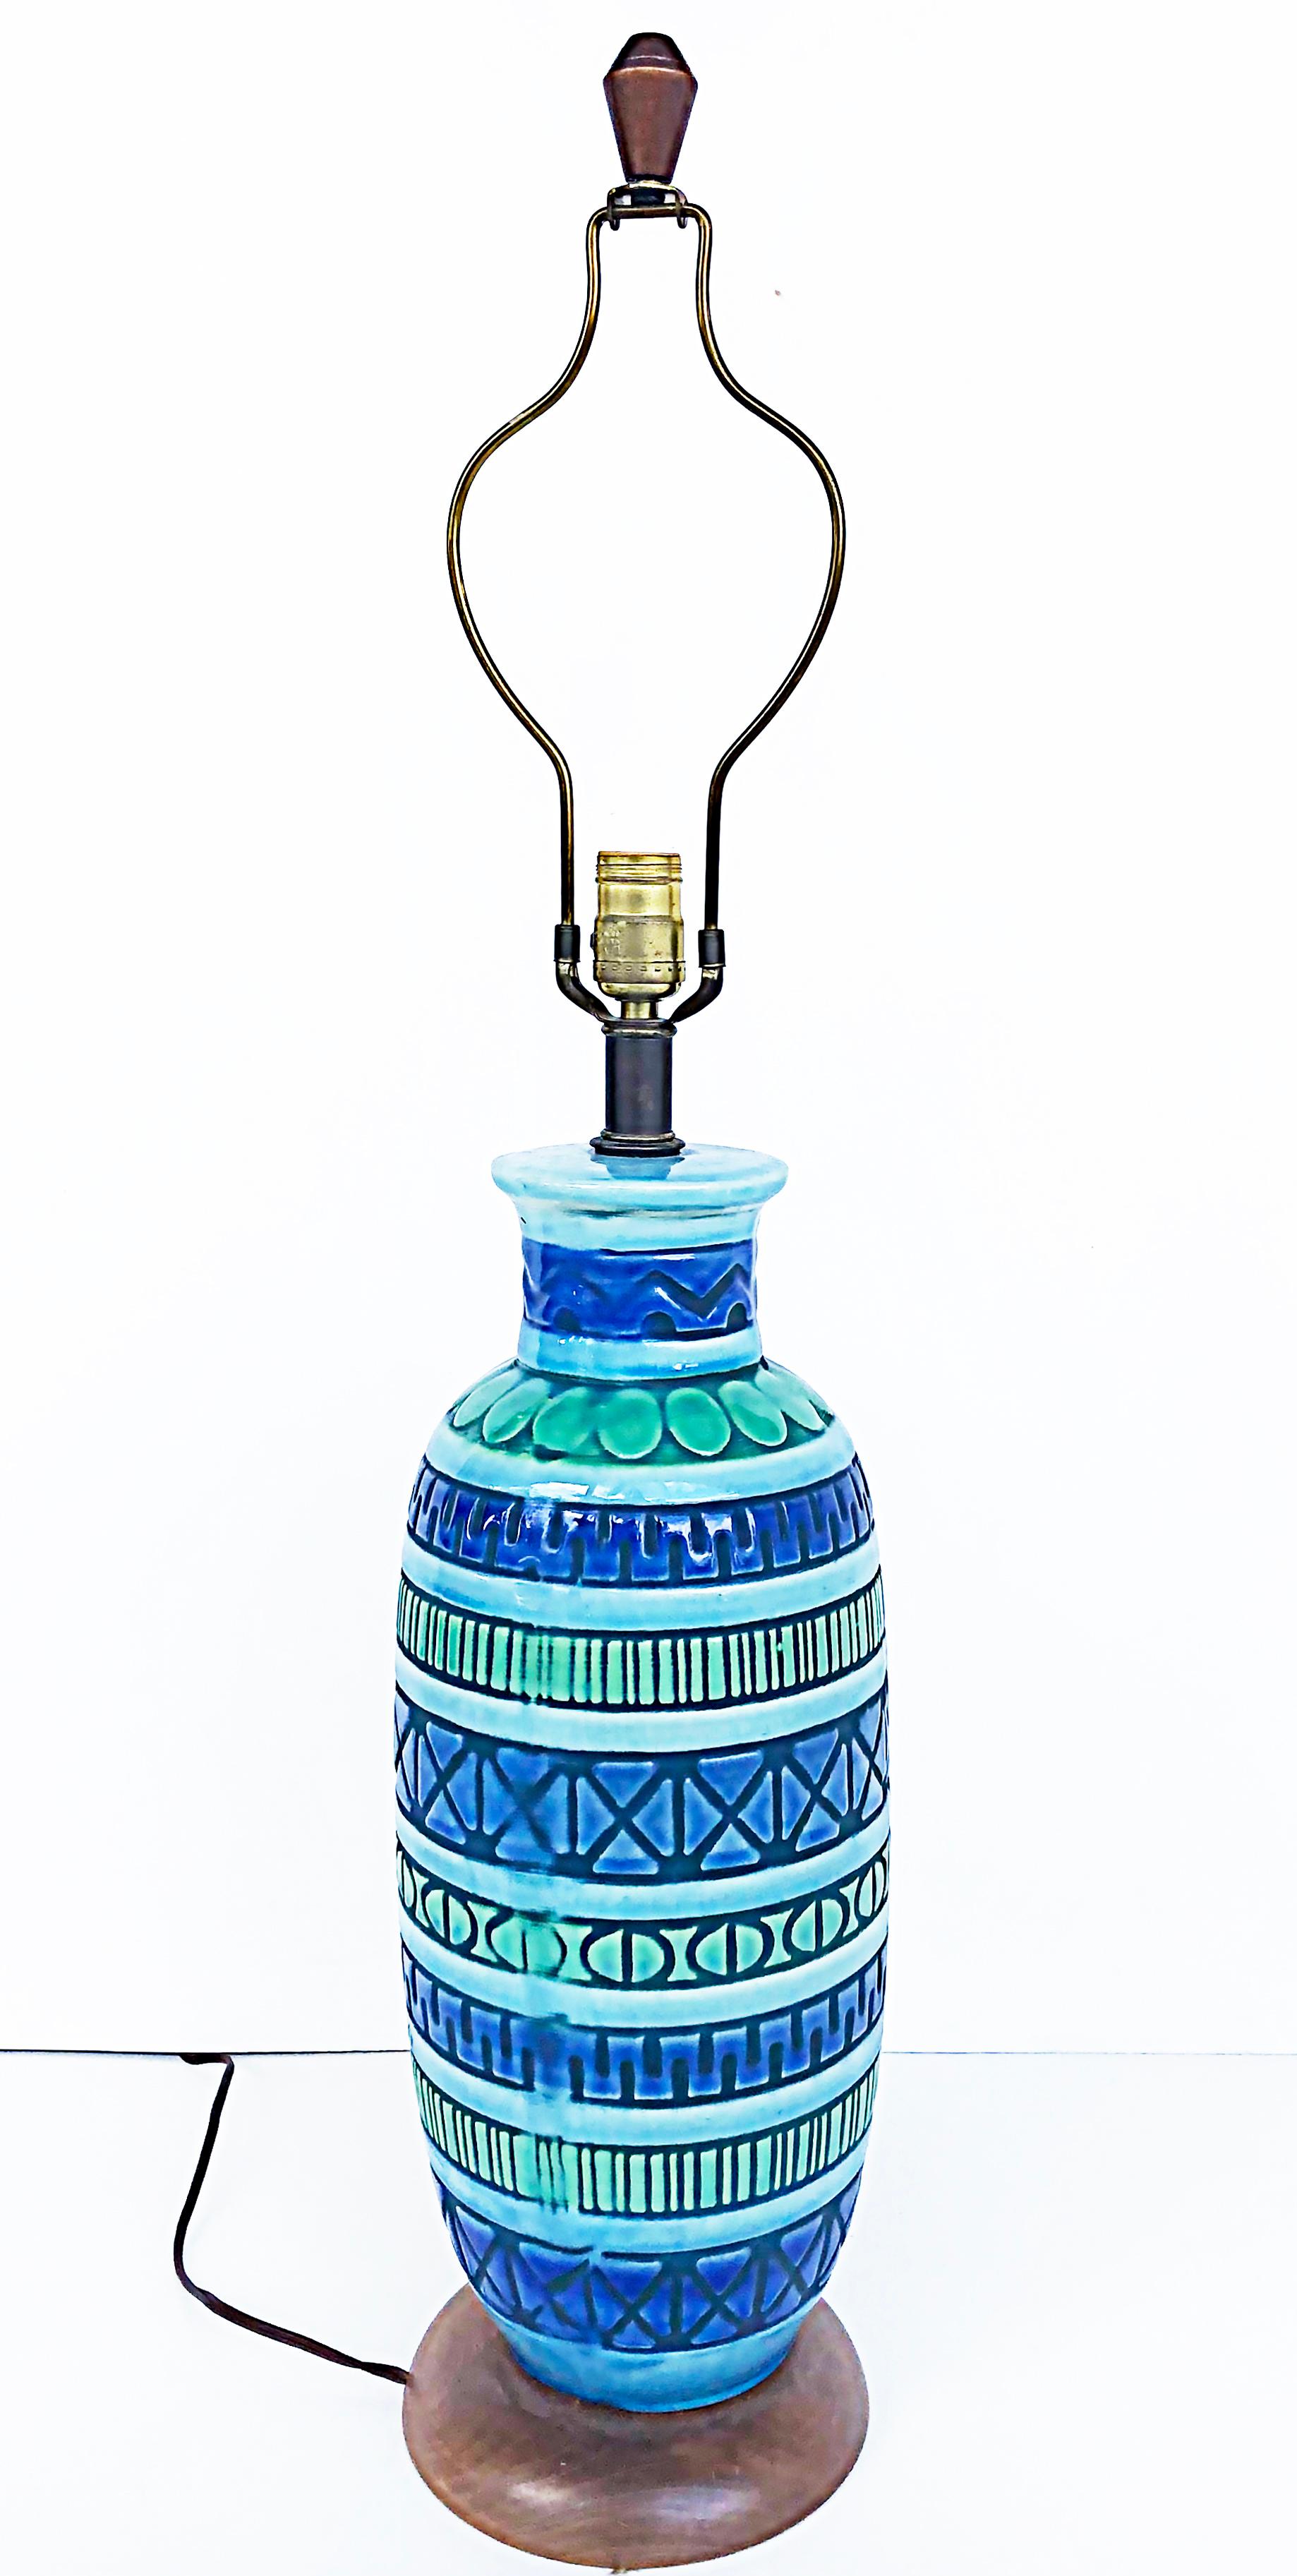 Lampes de table en céramique de style moderne du milieu du siècle, de la marque Bitossi.

Nous proposons à la vente une paire de lampes en poterie émaillée du milieu du siècle dernier, créées à la manière d'Aldo Londi Bitossi. Les lampes présentent